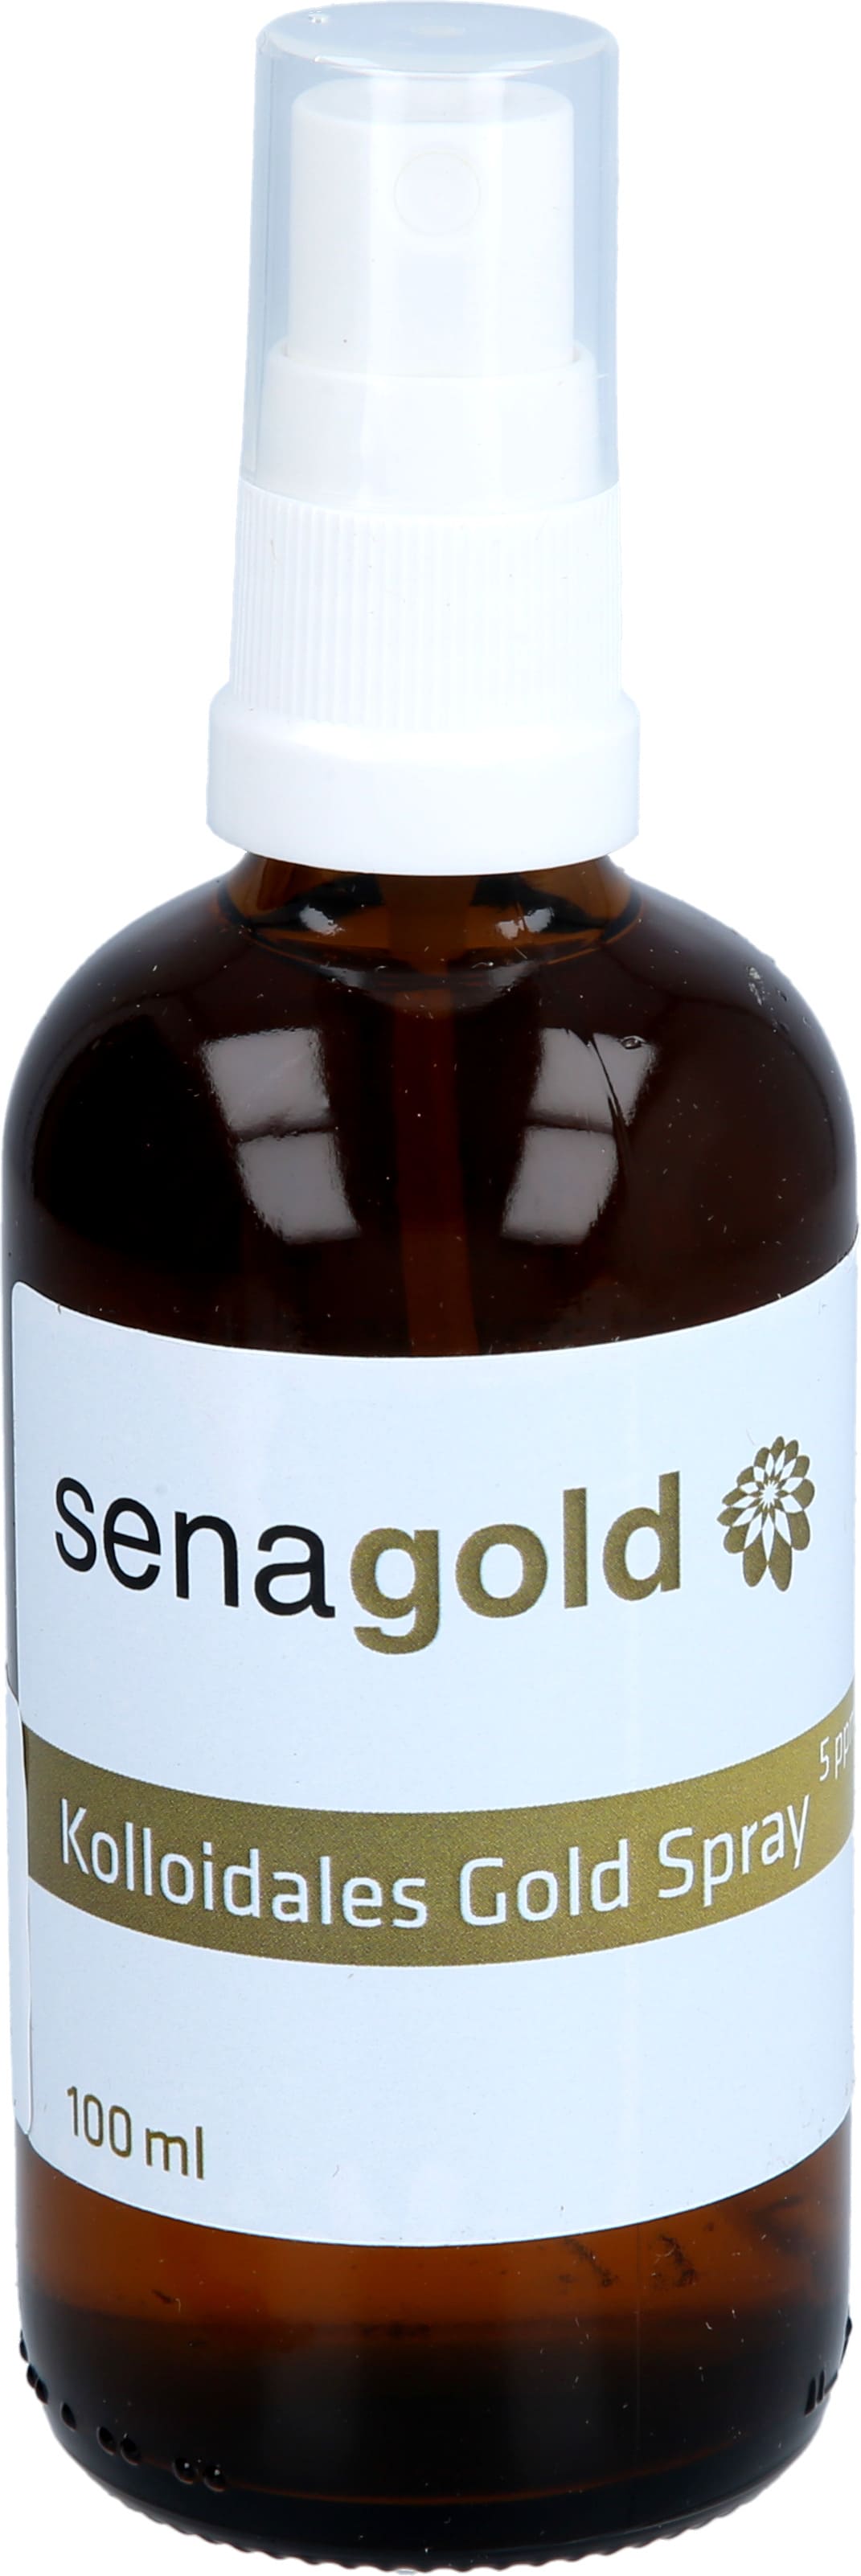 Kolloidales Gold Spray 5 ppm (Goldwasser mit Goldkolloid-Anteil 5 ppm), 100 ml